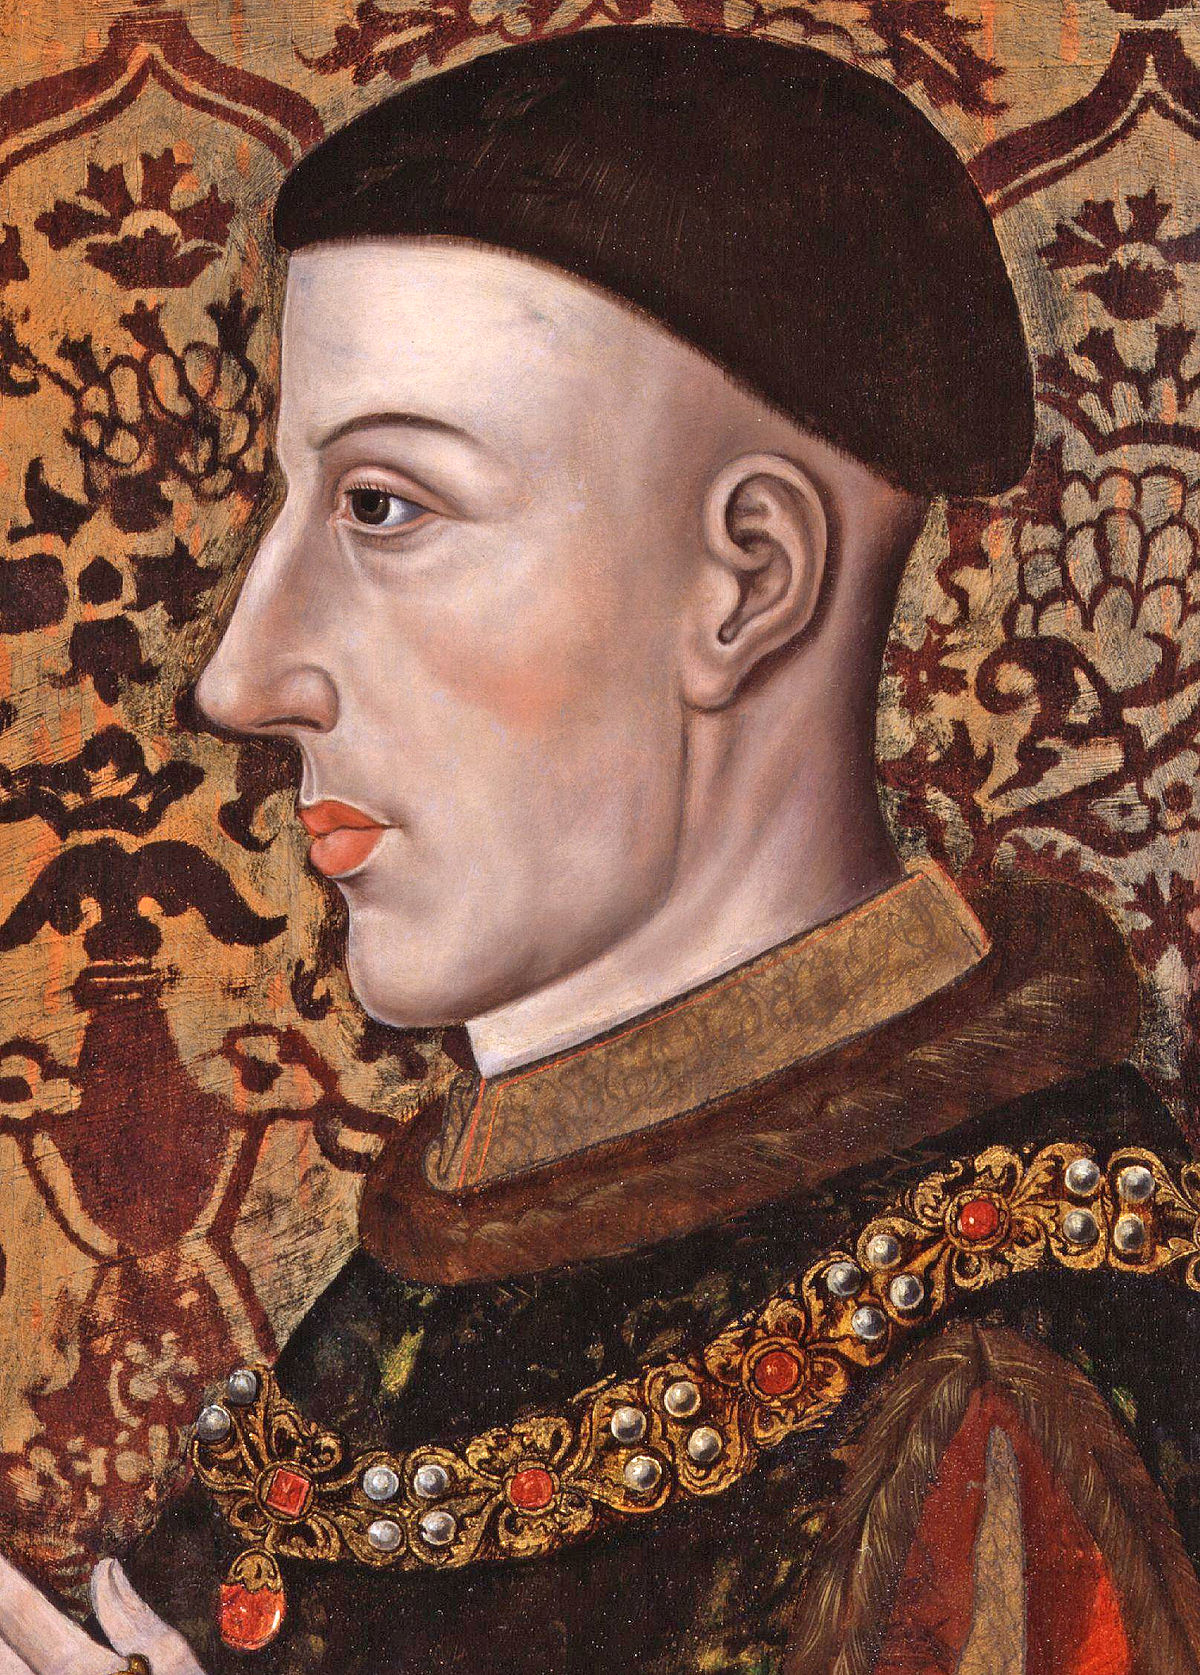 Pildiotsingu kuningas Henry V 1419 tulemus